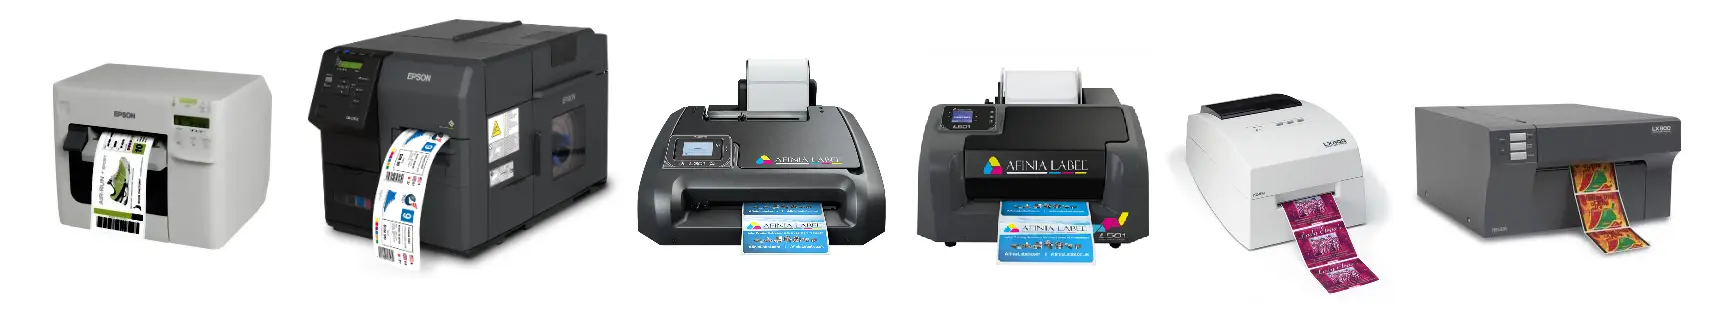 Epson, Afinia and Primera Label Printers